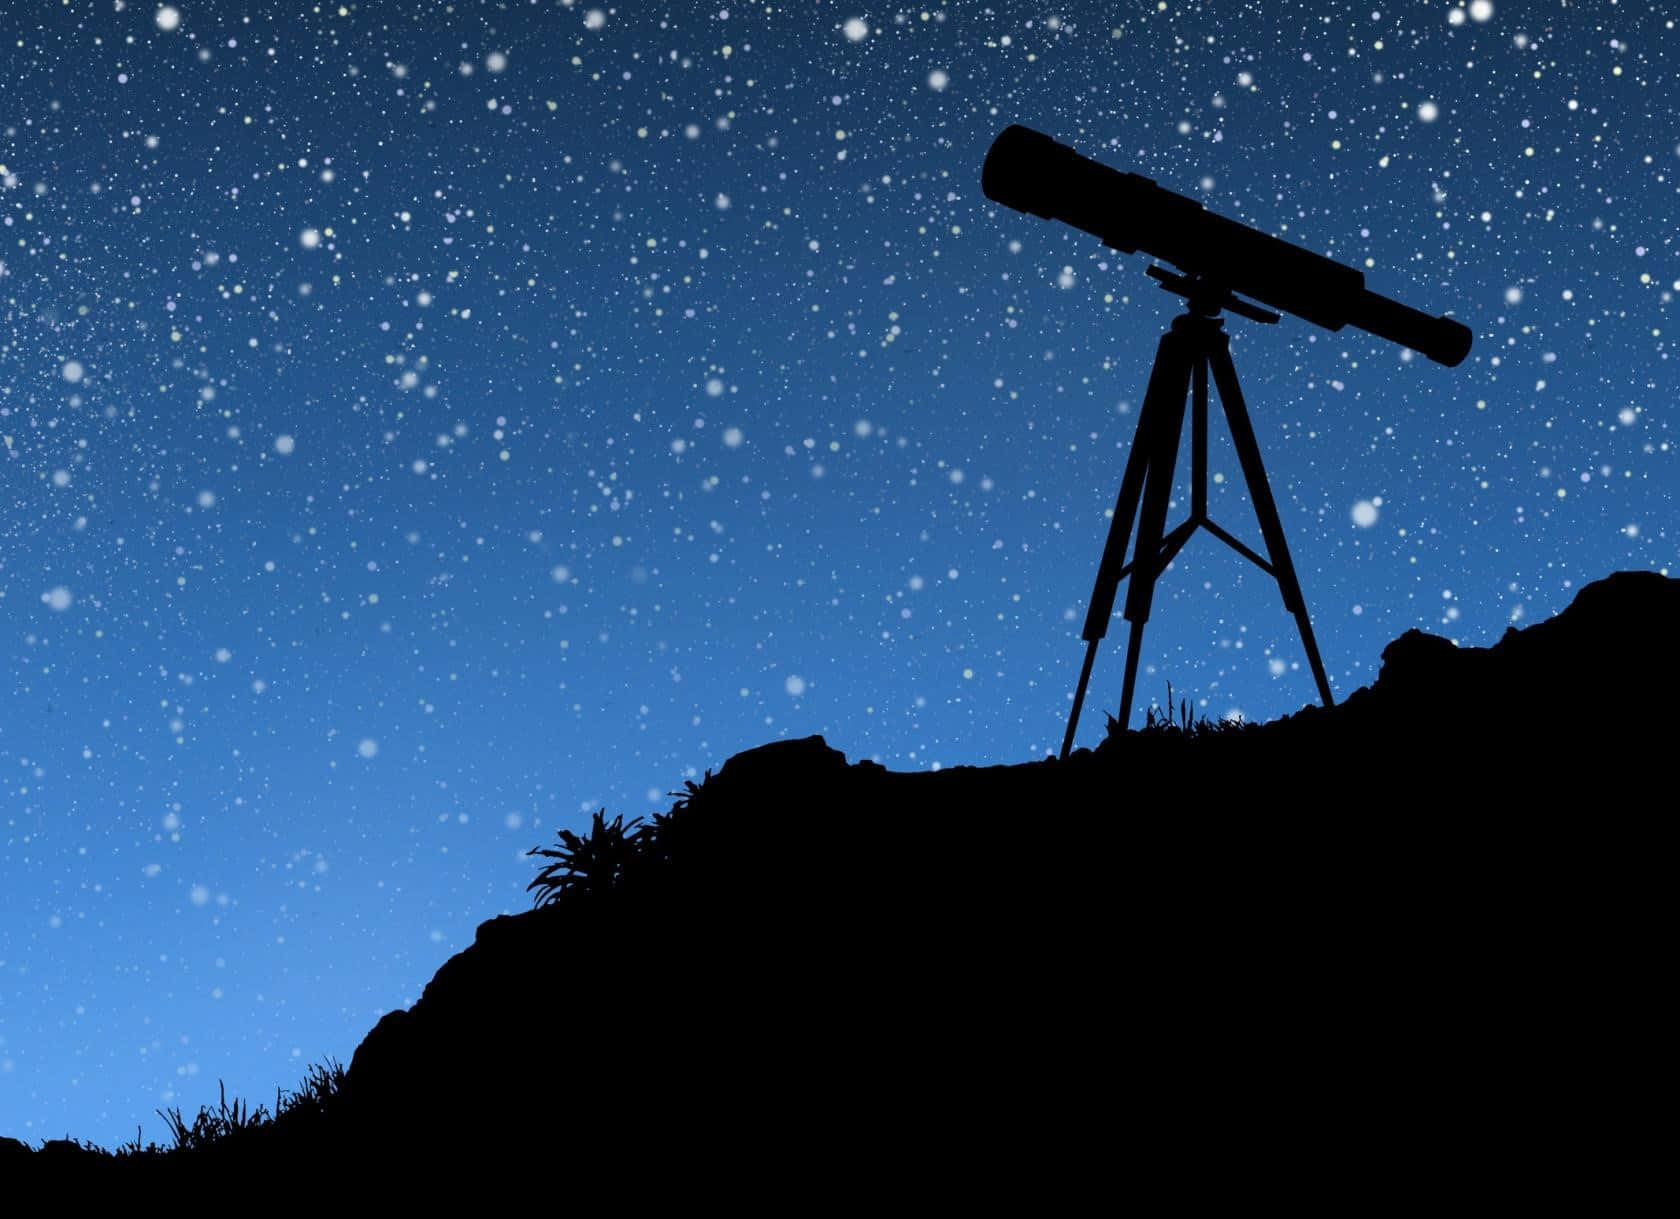 Untelescopio En El Cielo Nocturno.